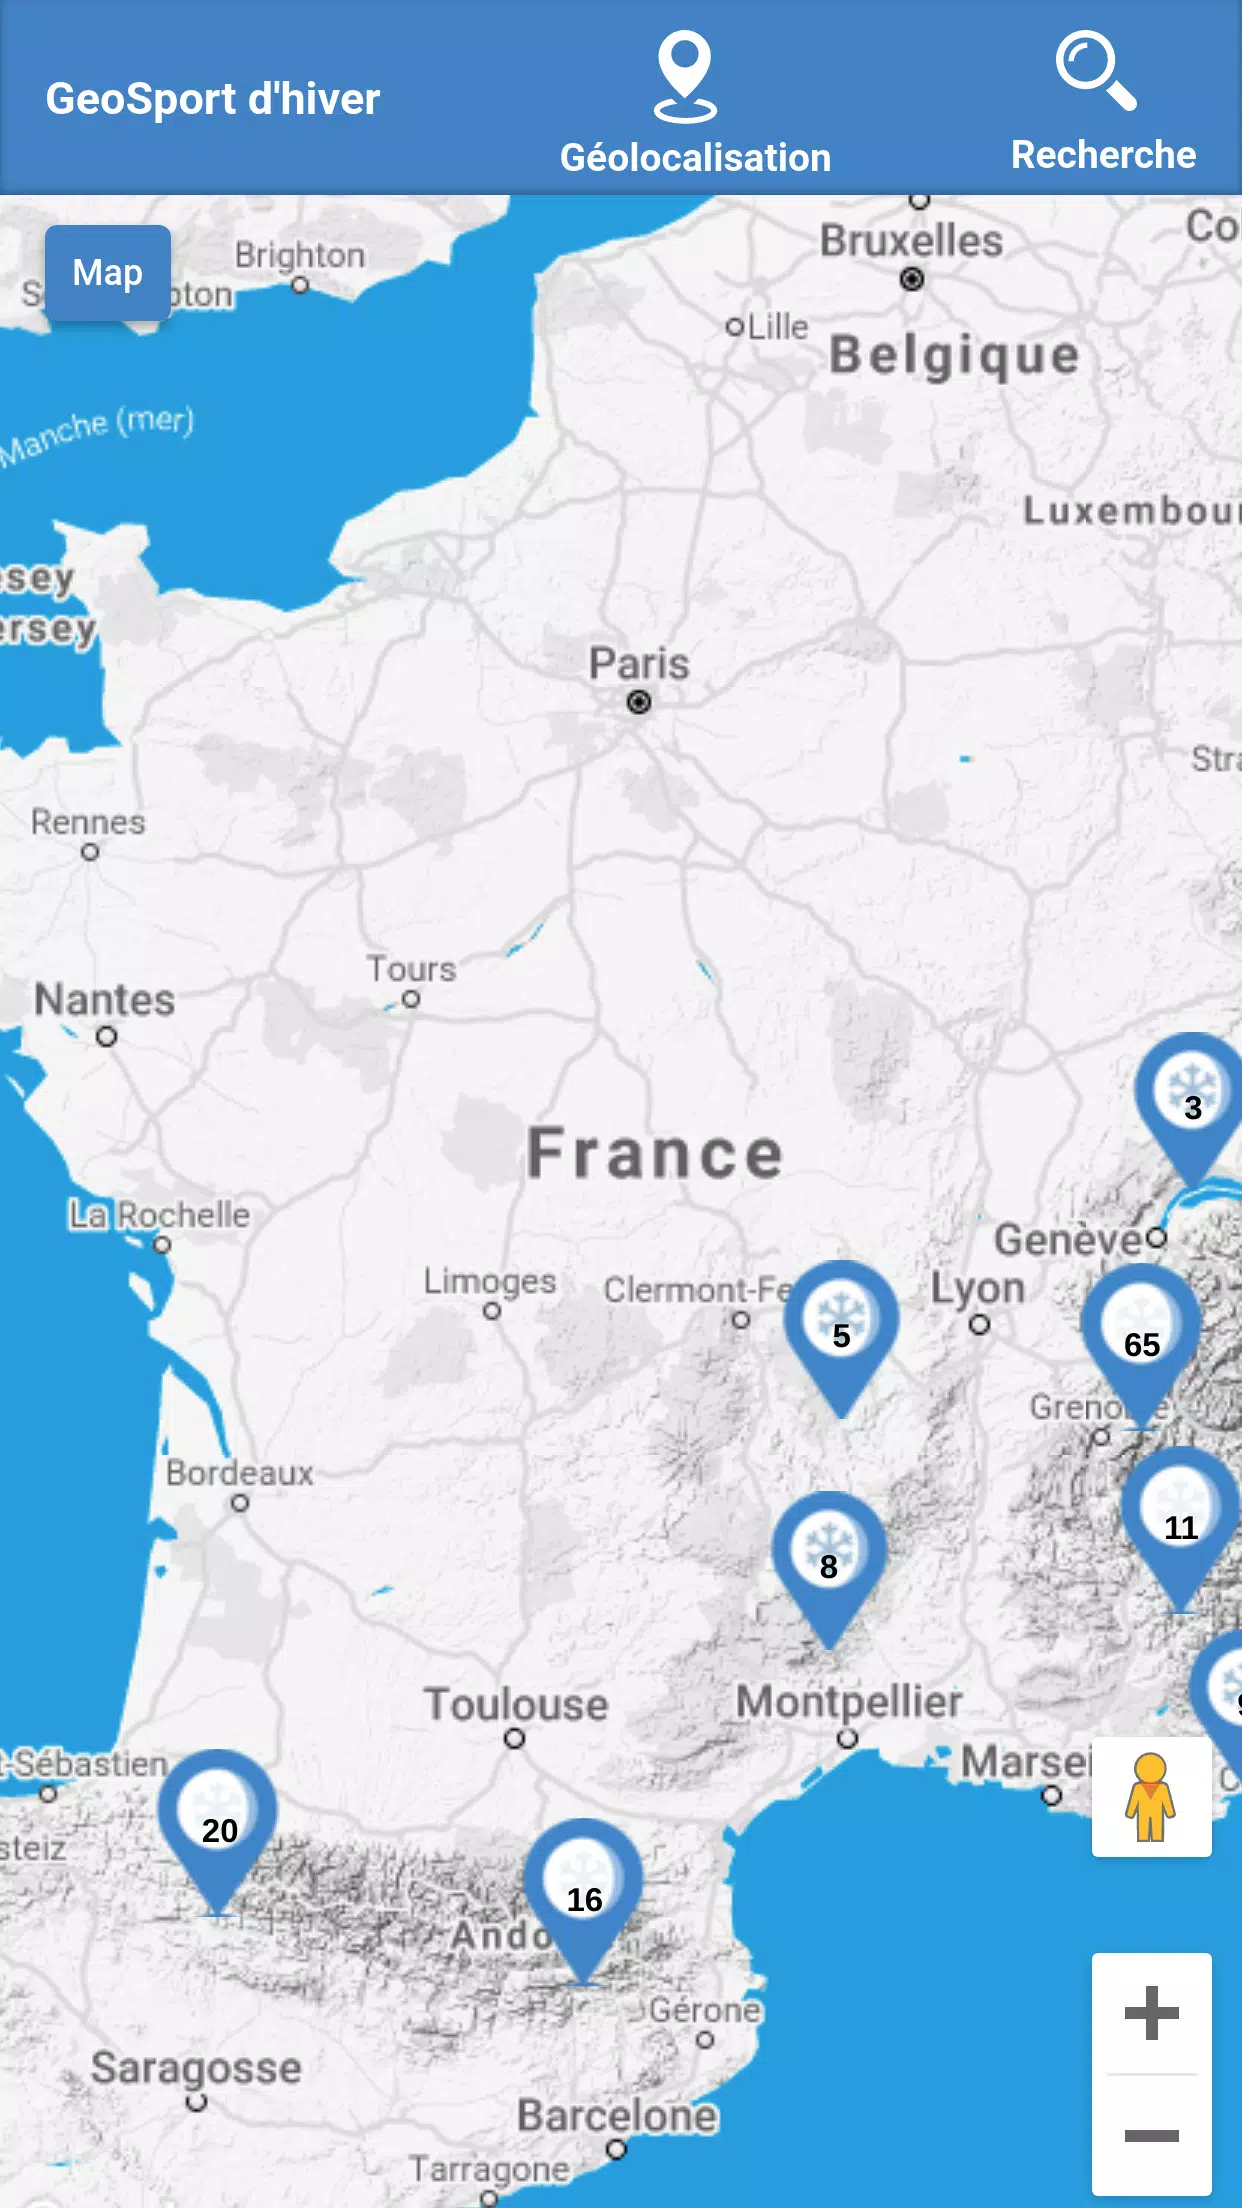 GeoSport d'hiver | Station de ski en France APK for Android Download